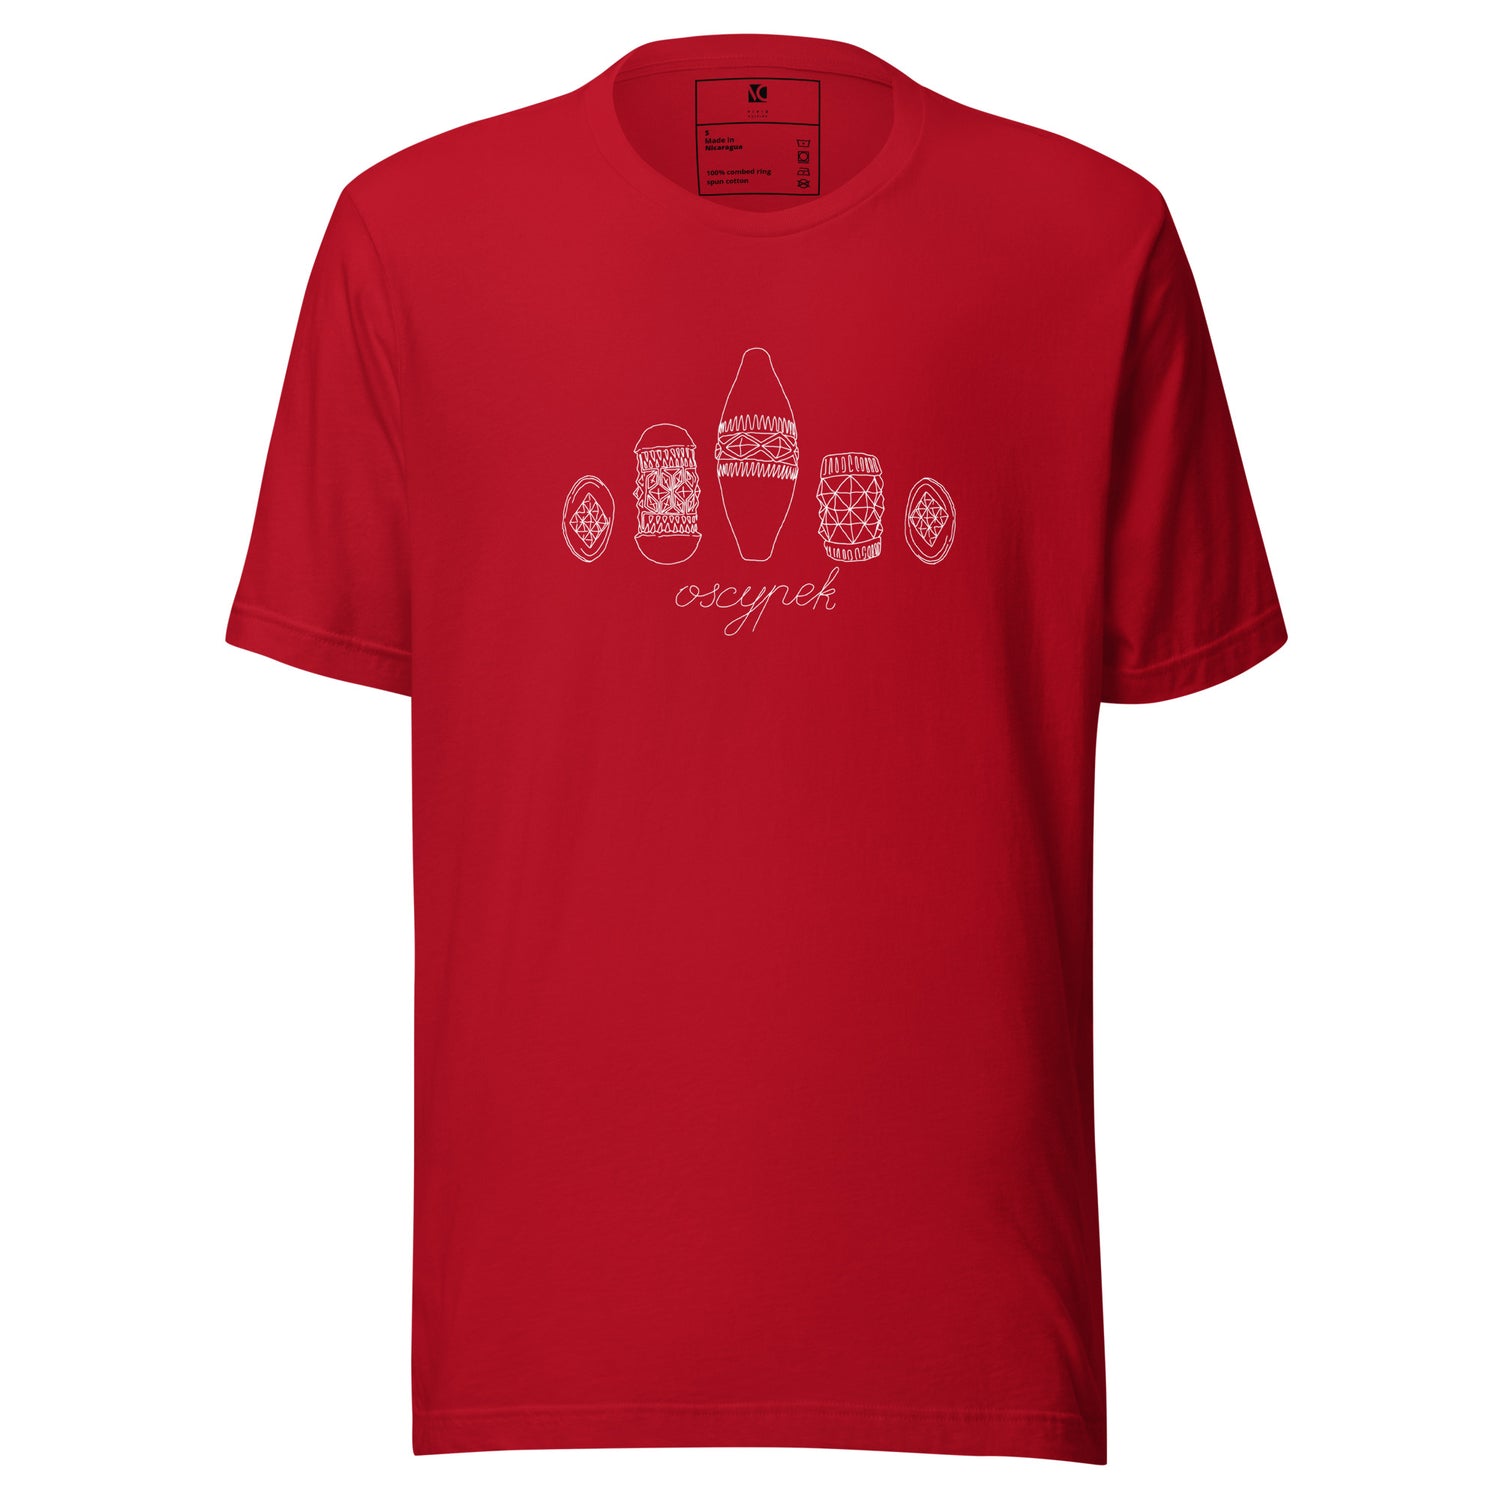 Oscypek (W) - Unisex T-Shirt